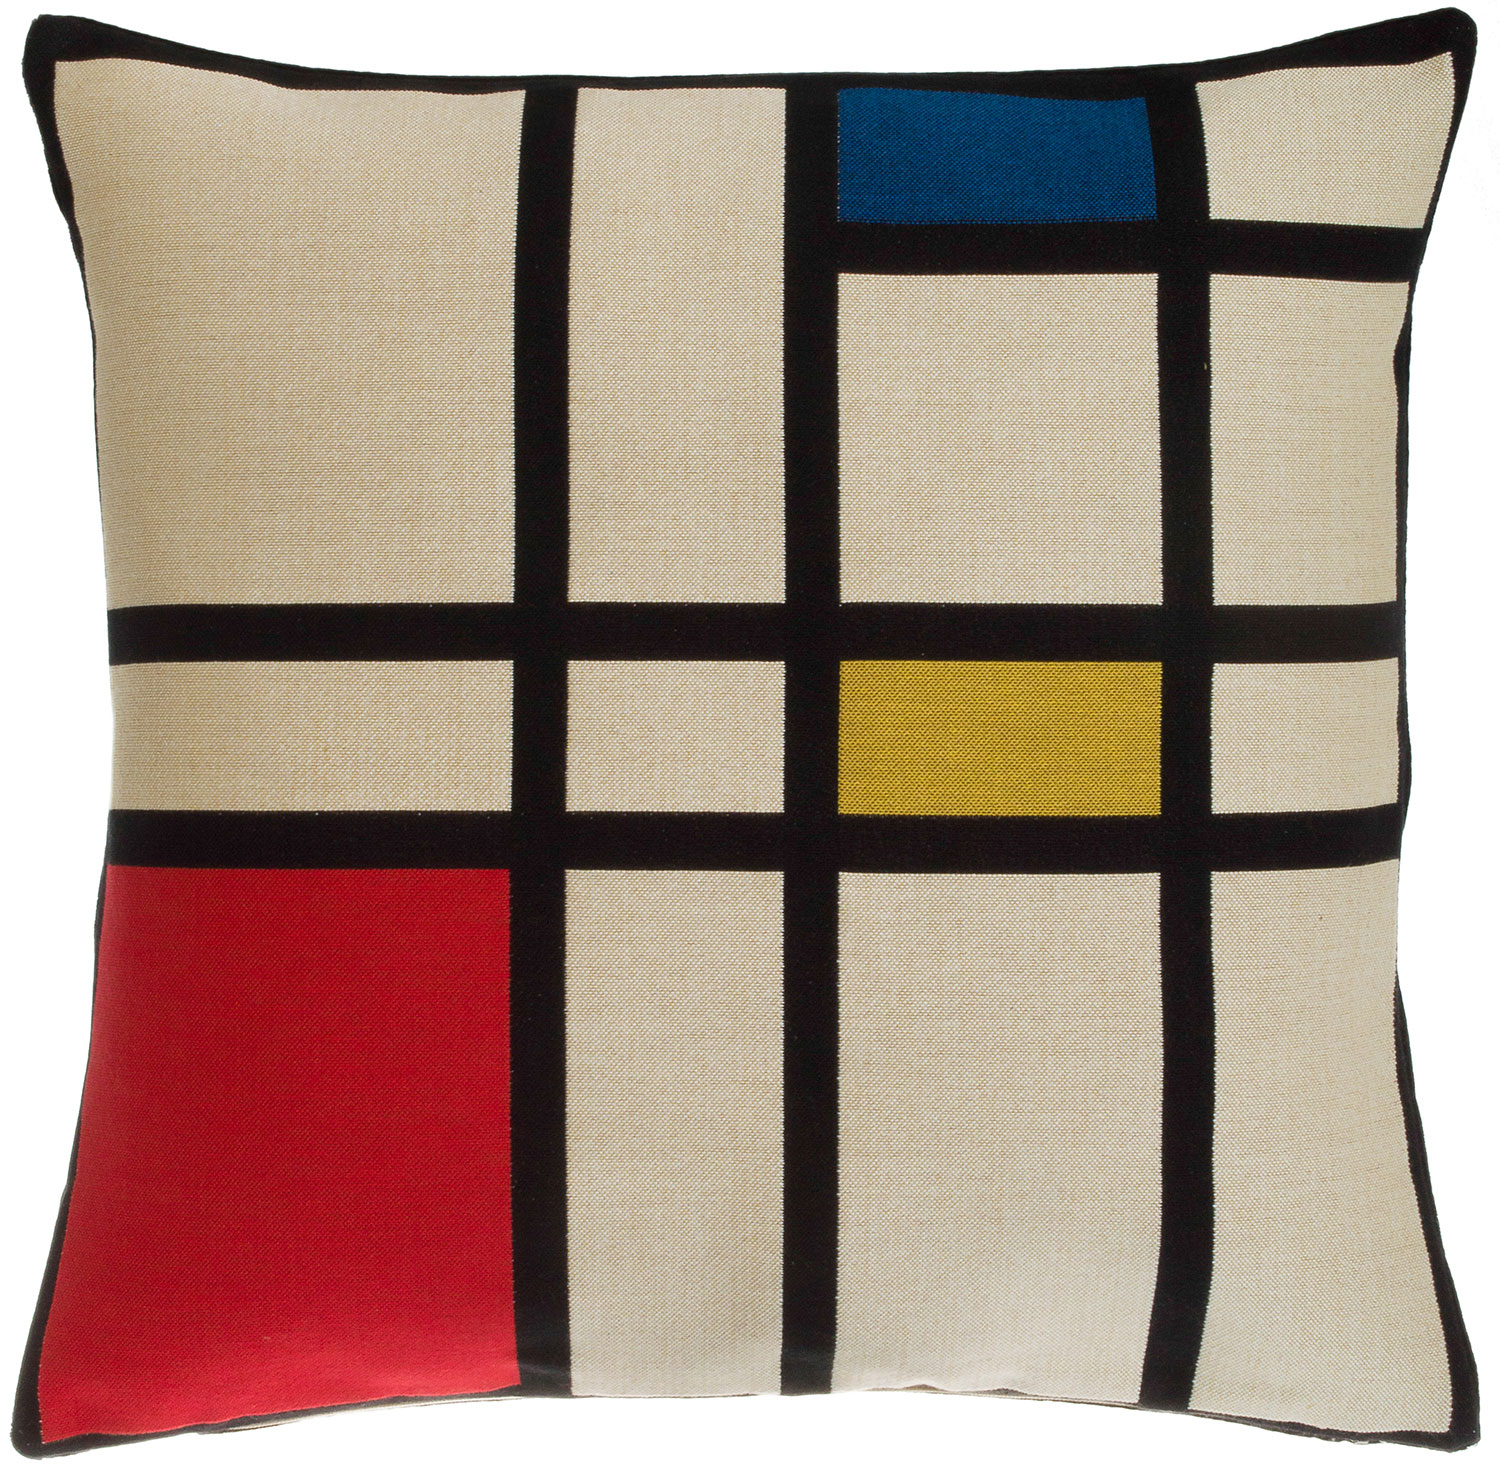 Kissenhülle "Komposition II in Rot, Blau und Gelb" von Piet Mondrian